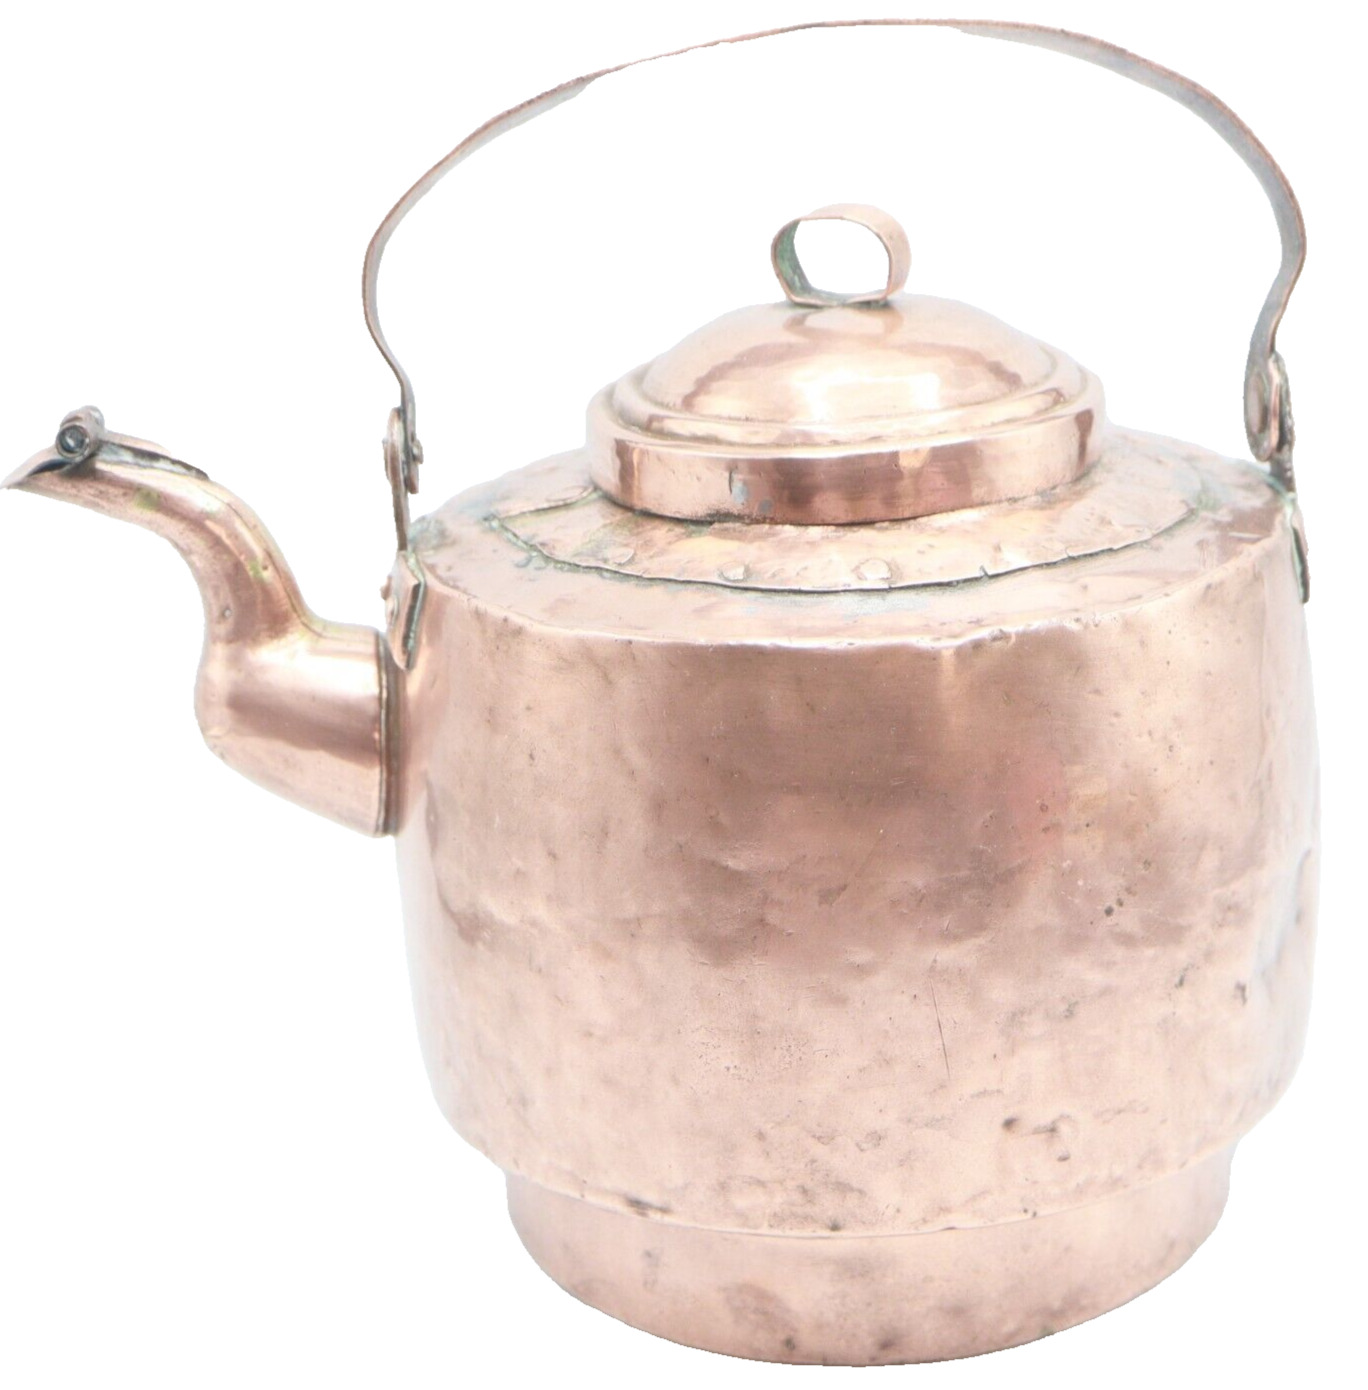 Copper Tea Kettle Antique 1700's Primitive